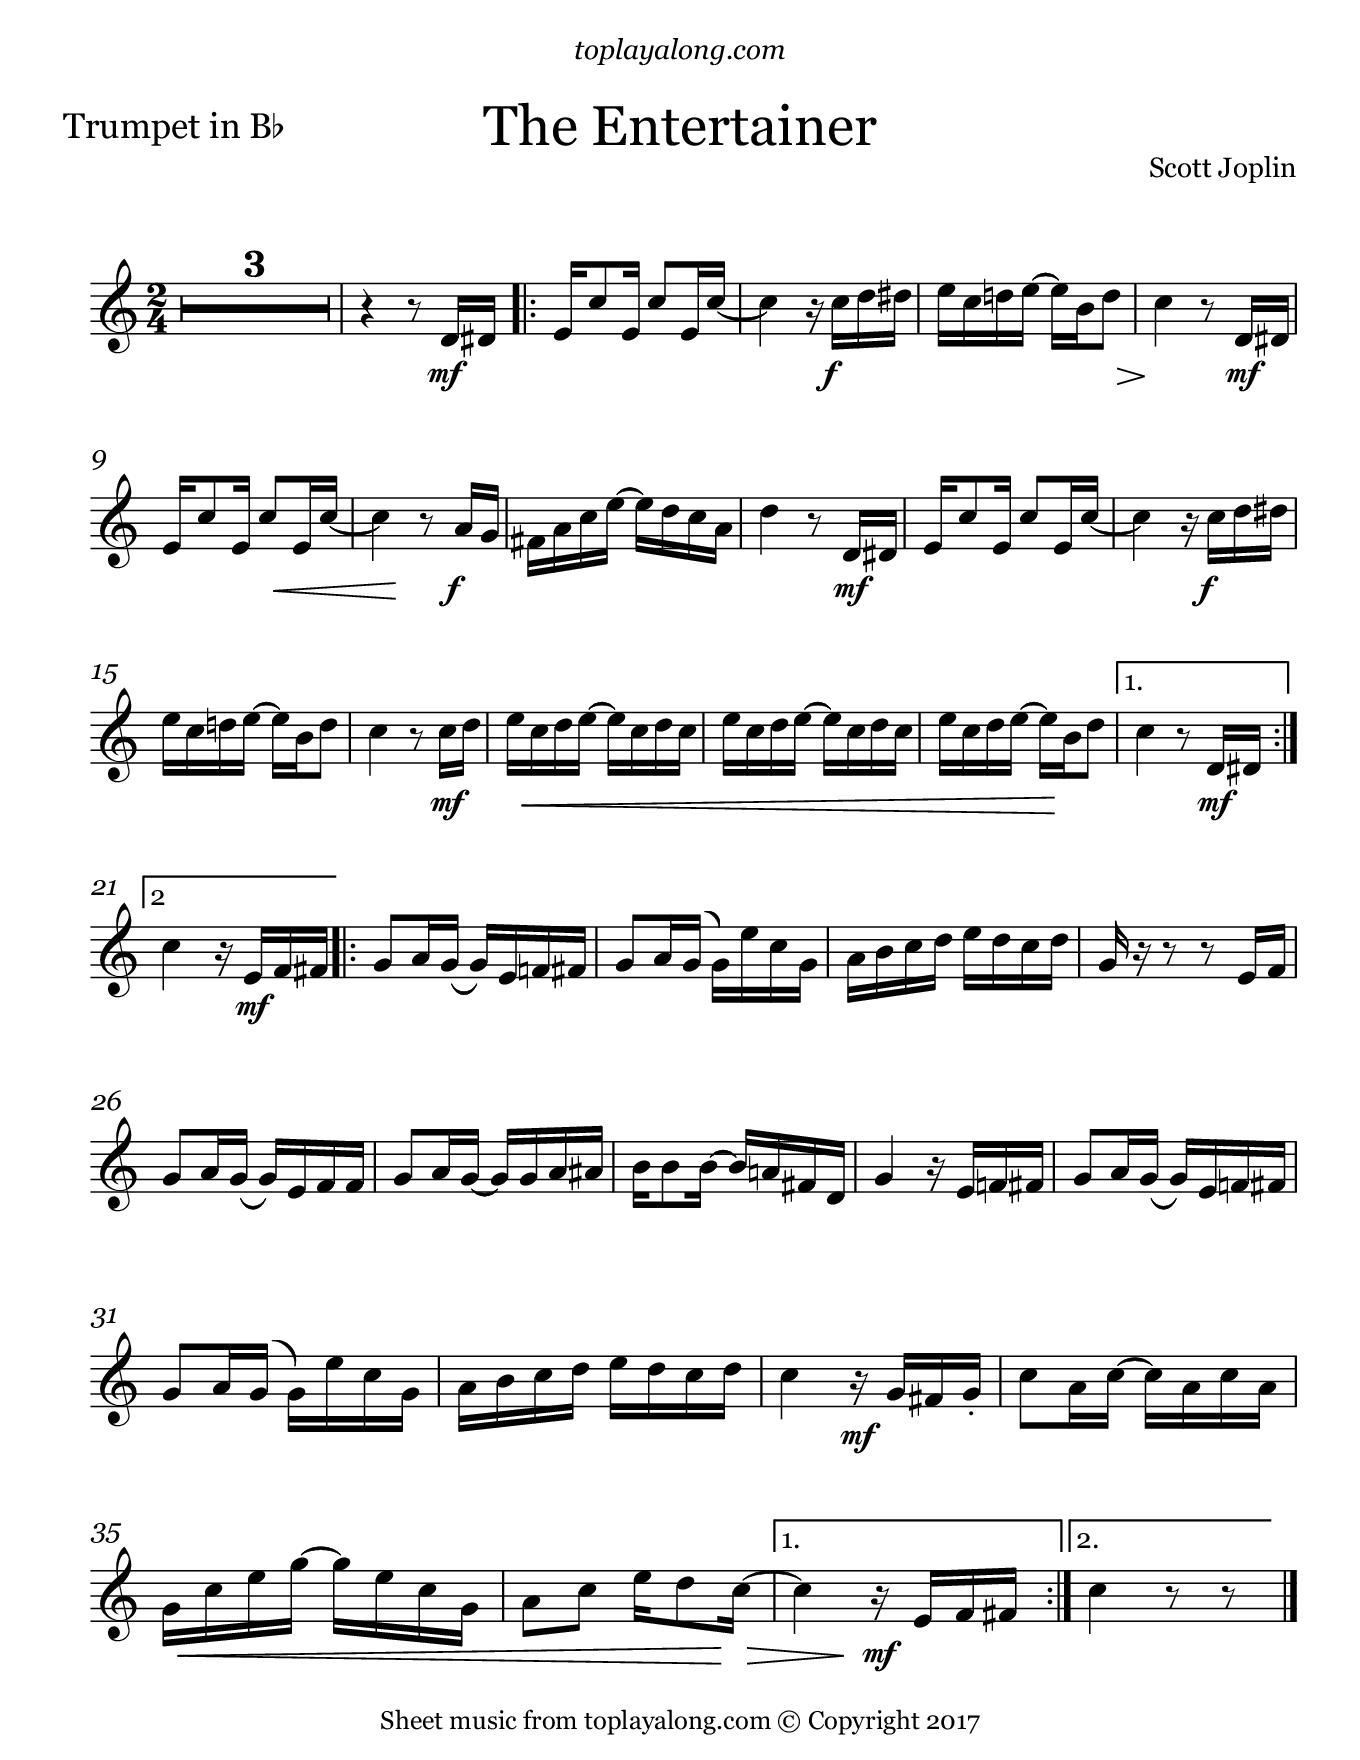 The Entertainerscott Joplin. Sheet Music For Trumpet, Page 1 - Free Printable Sheet Music For The Entertainer